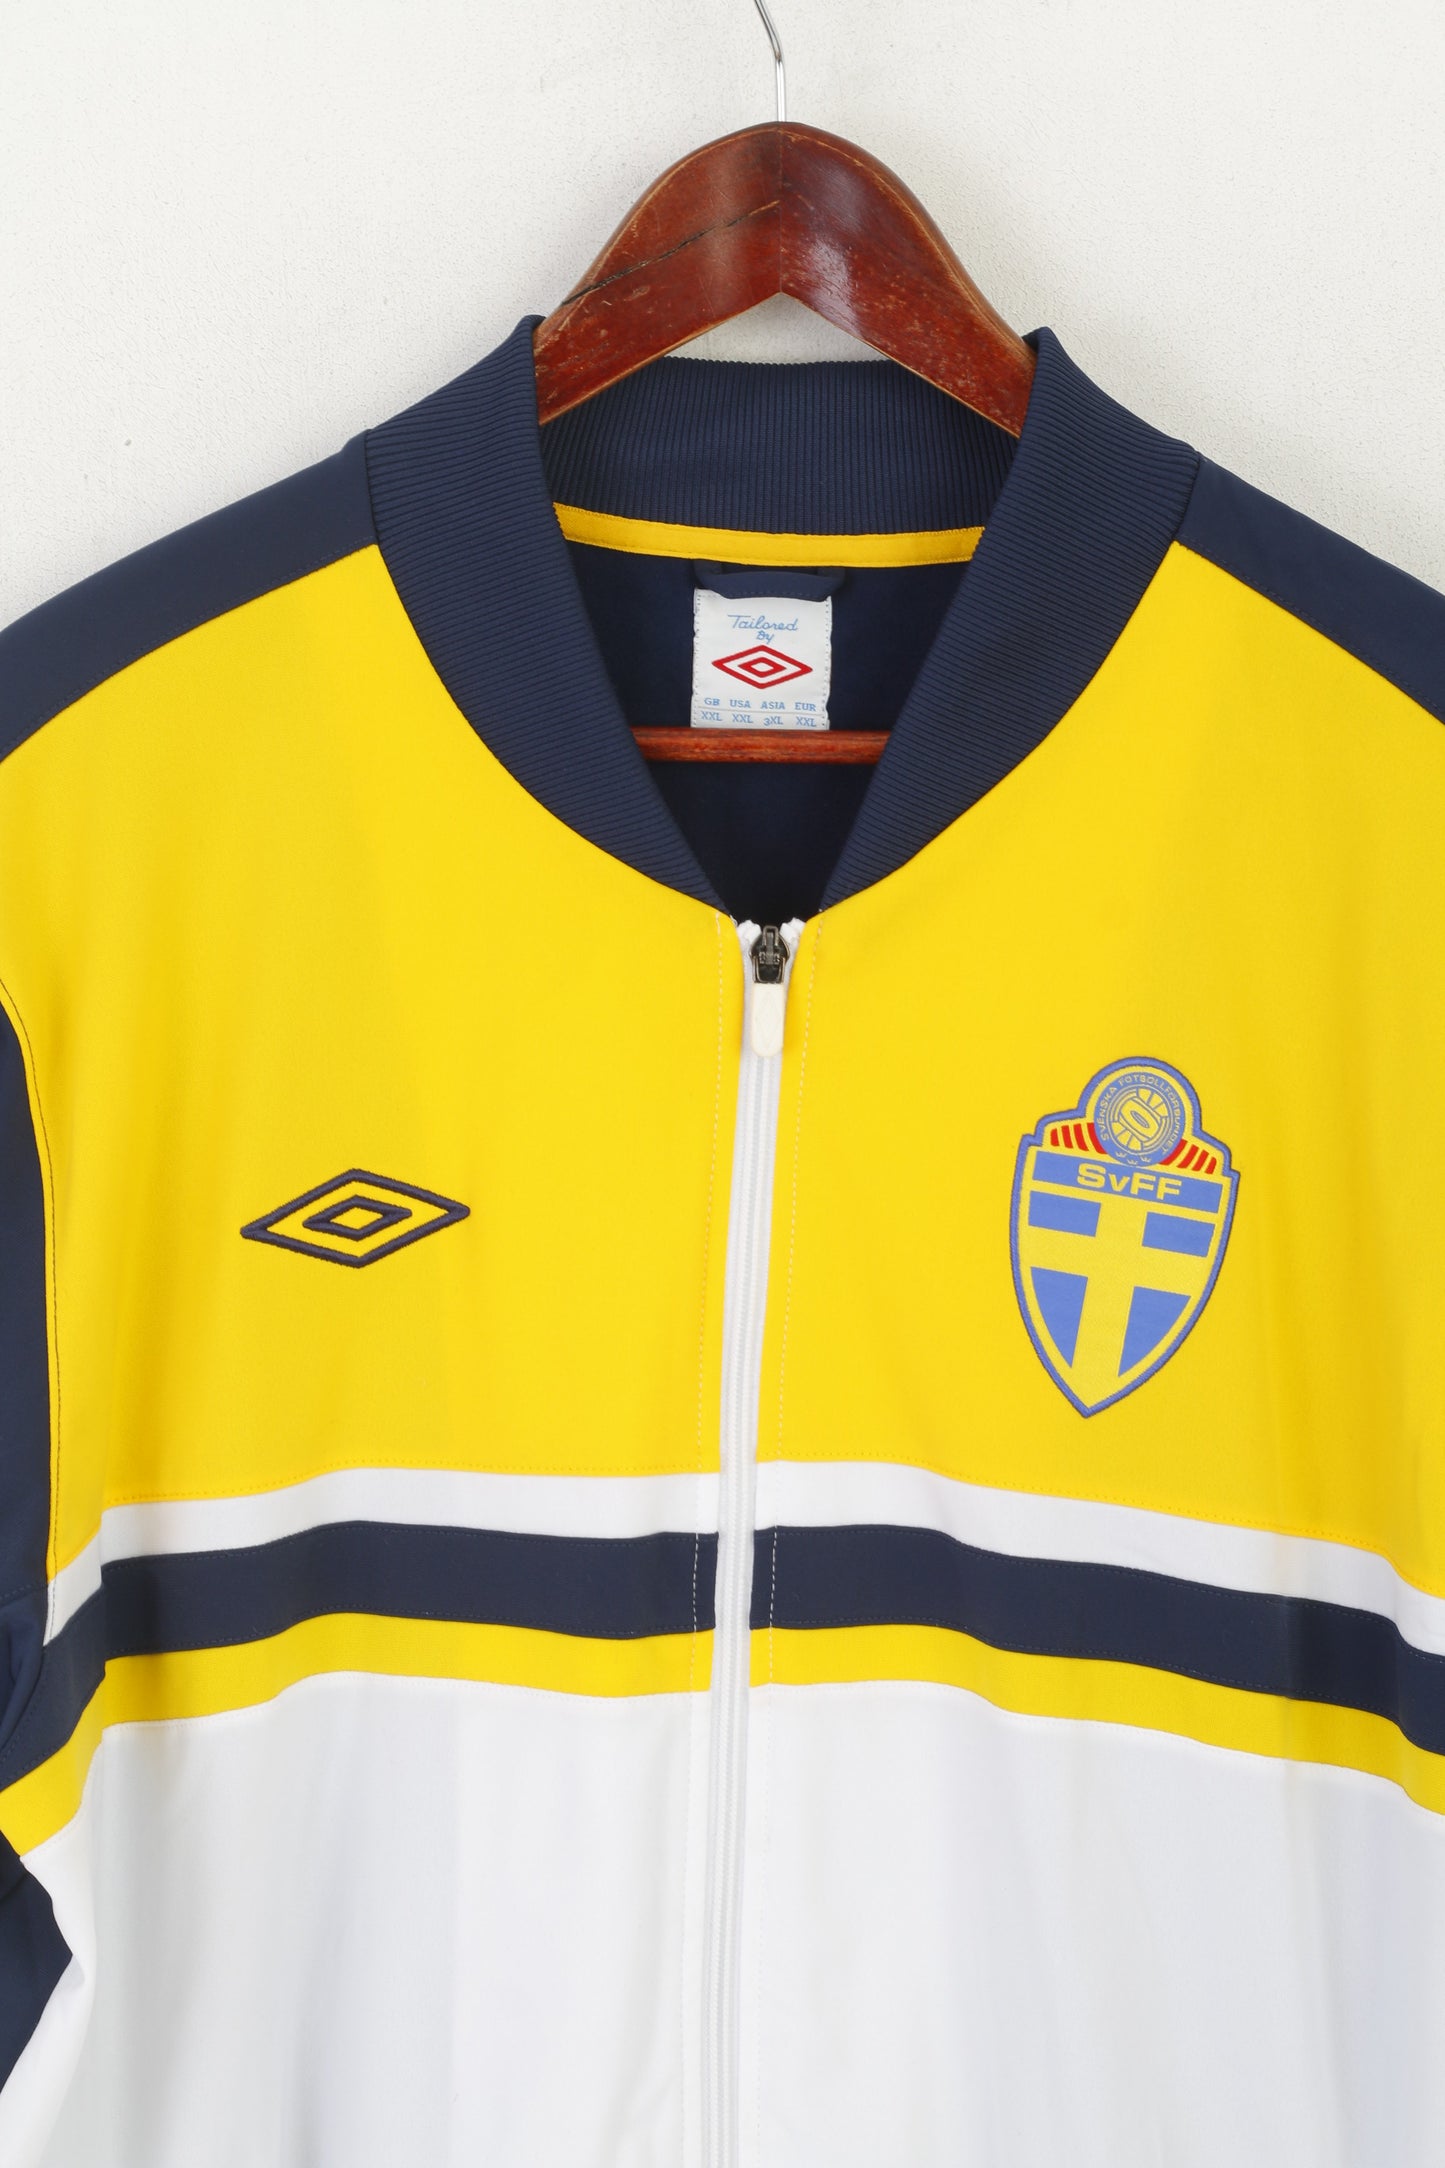 Umbro Men XXL Sweatshirt Navy Yellow SvFF Svenska Football Zip Up Track Top